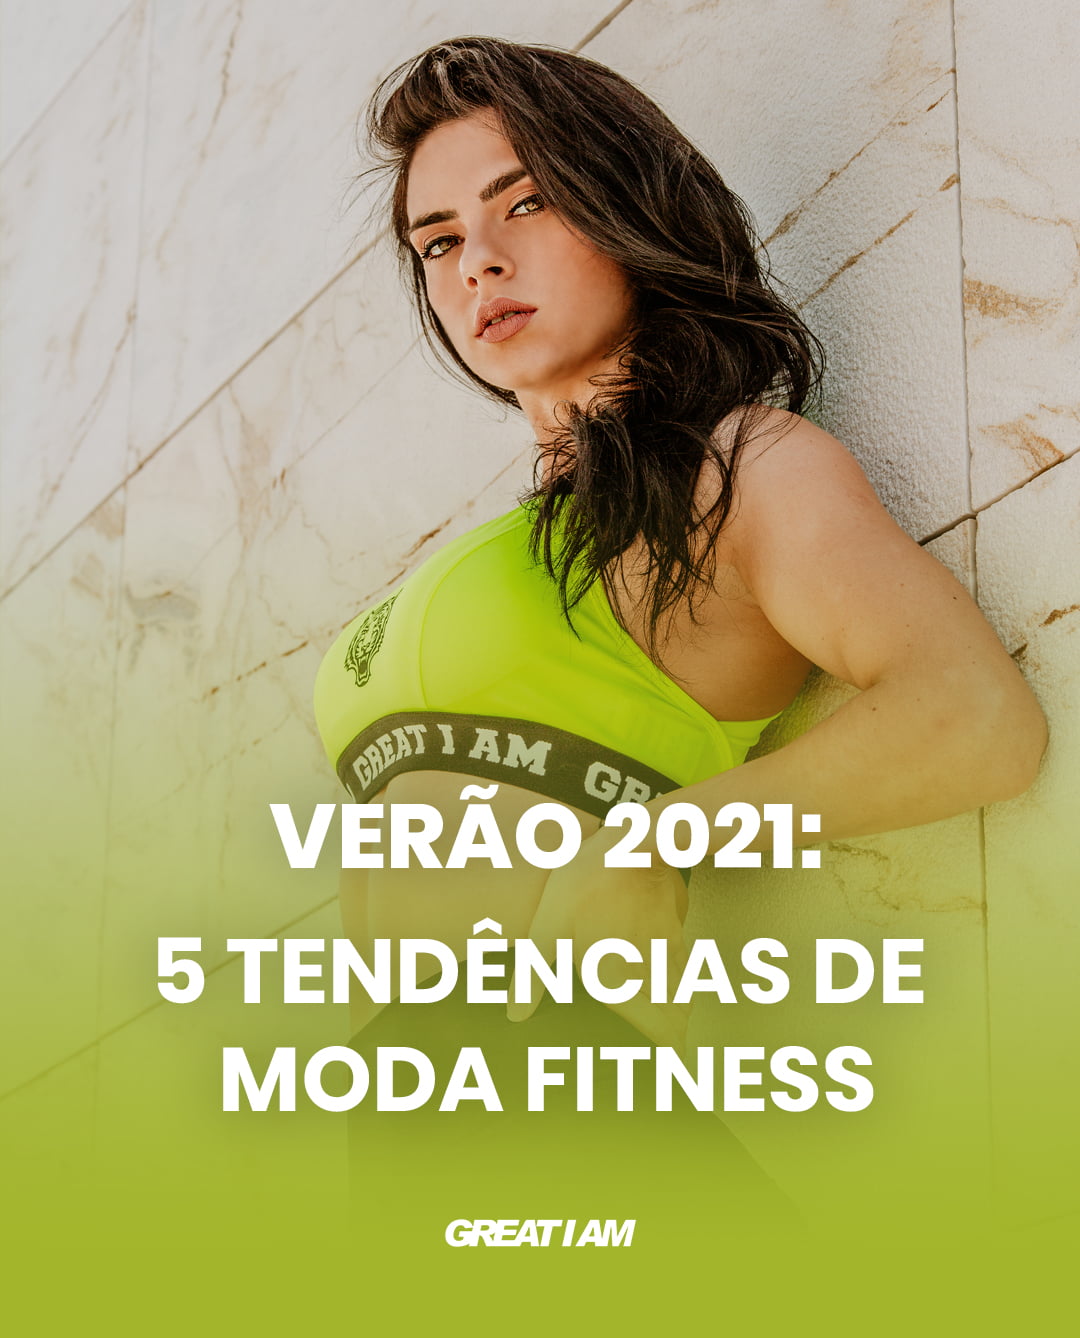 Verão 2021: 5 Tendências de moda fitness